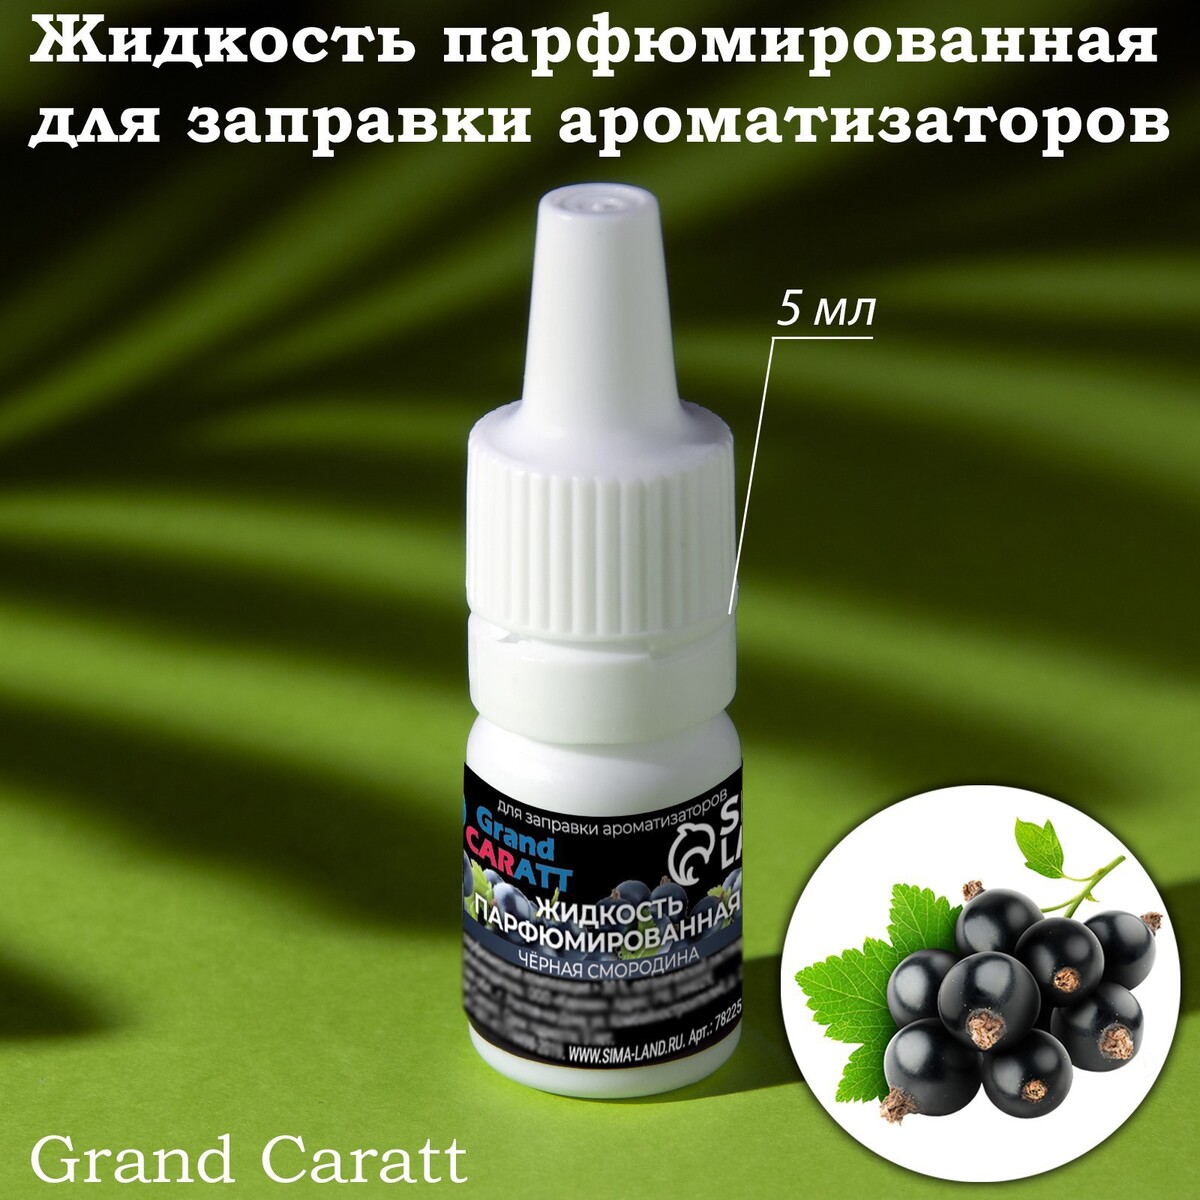 Жидкость парфюмированная grand caratt, для заправки ароматизаторов, черная смородина, 5 мл жидкость парфюмированная grand caratt для заправки ароматизаторов апельсин 5 мл